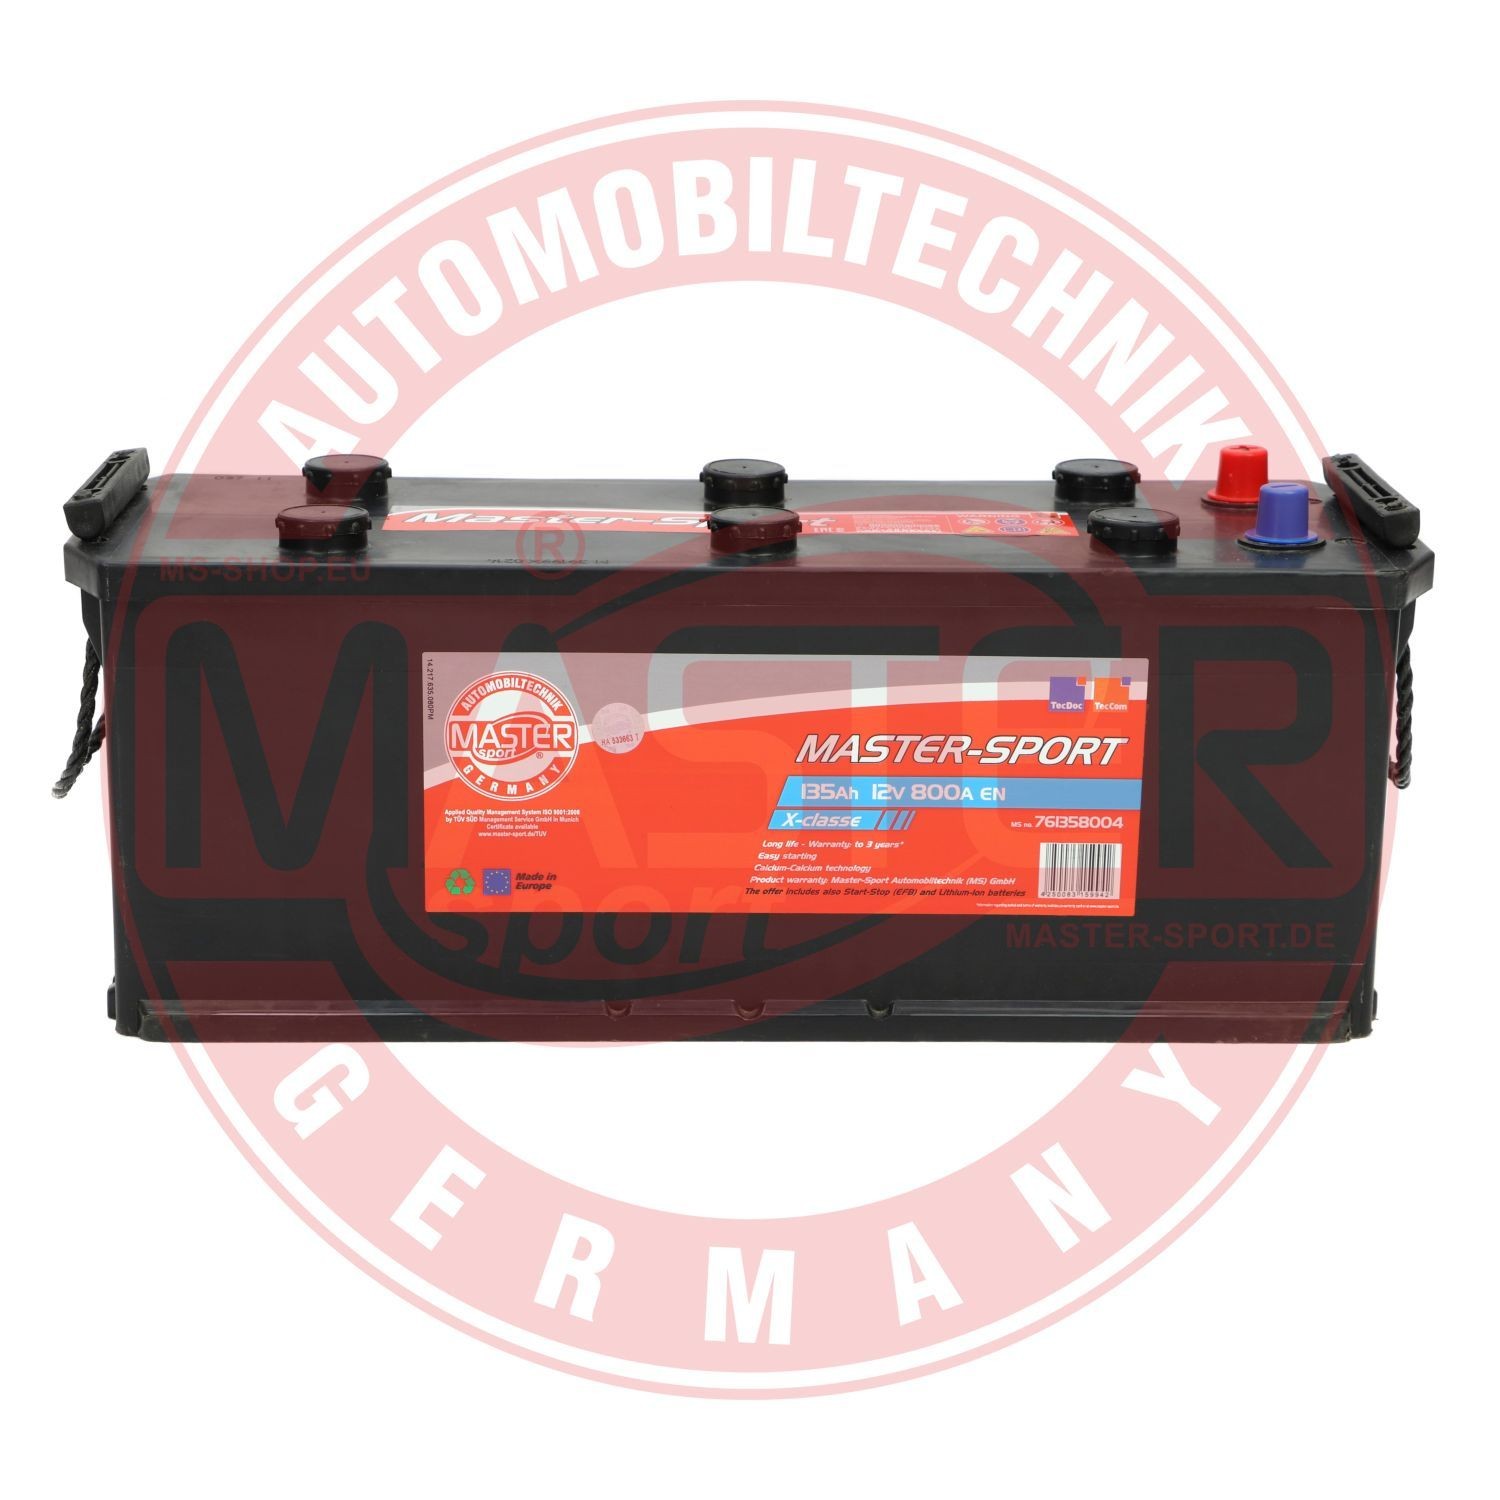 761358004 MASTER-SPORT Batterie für VOLVO online bestellen